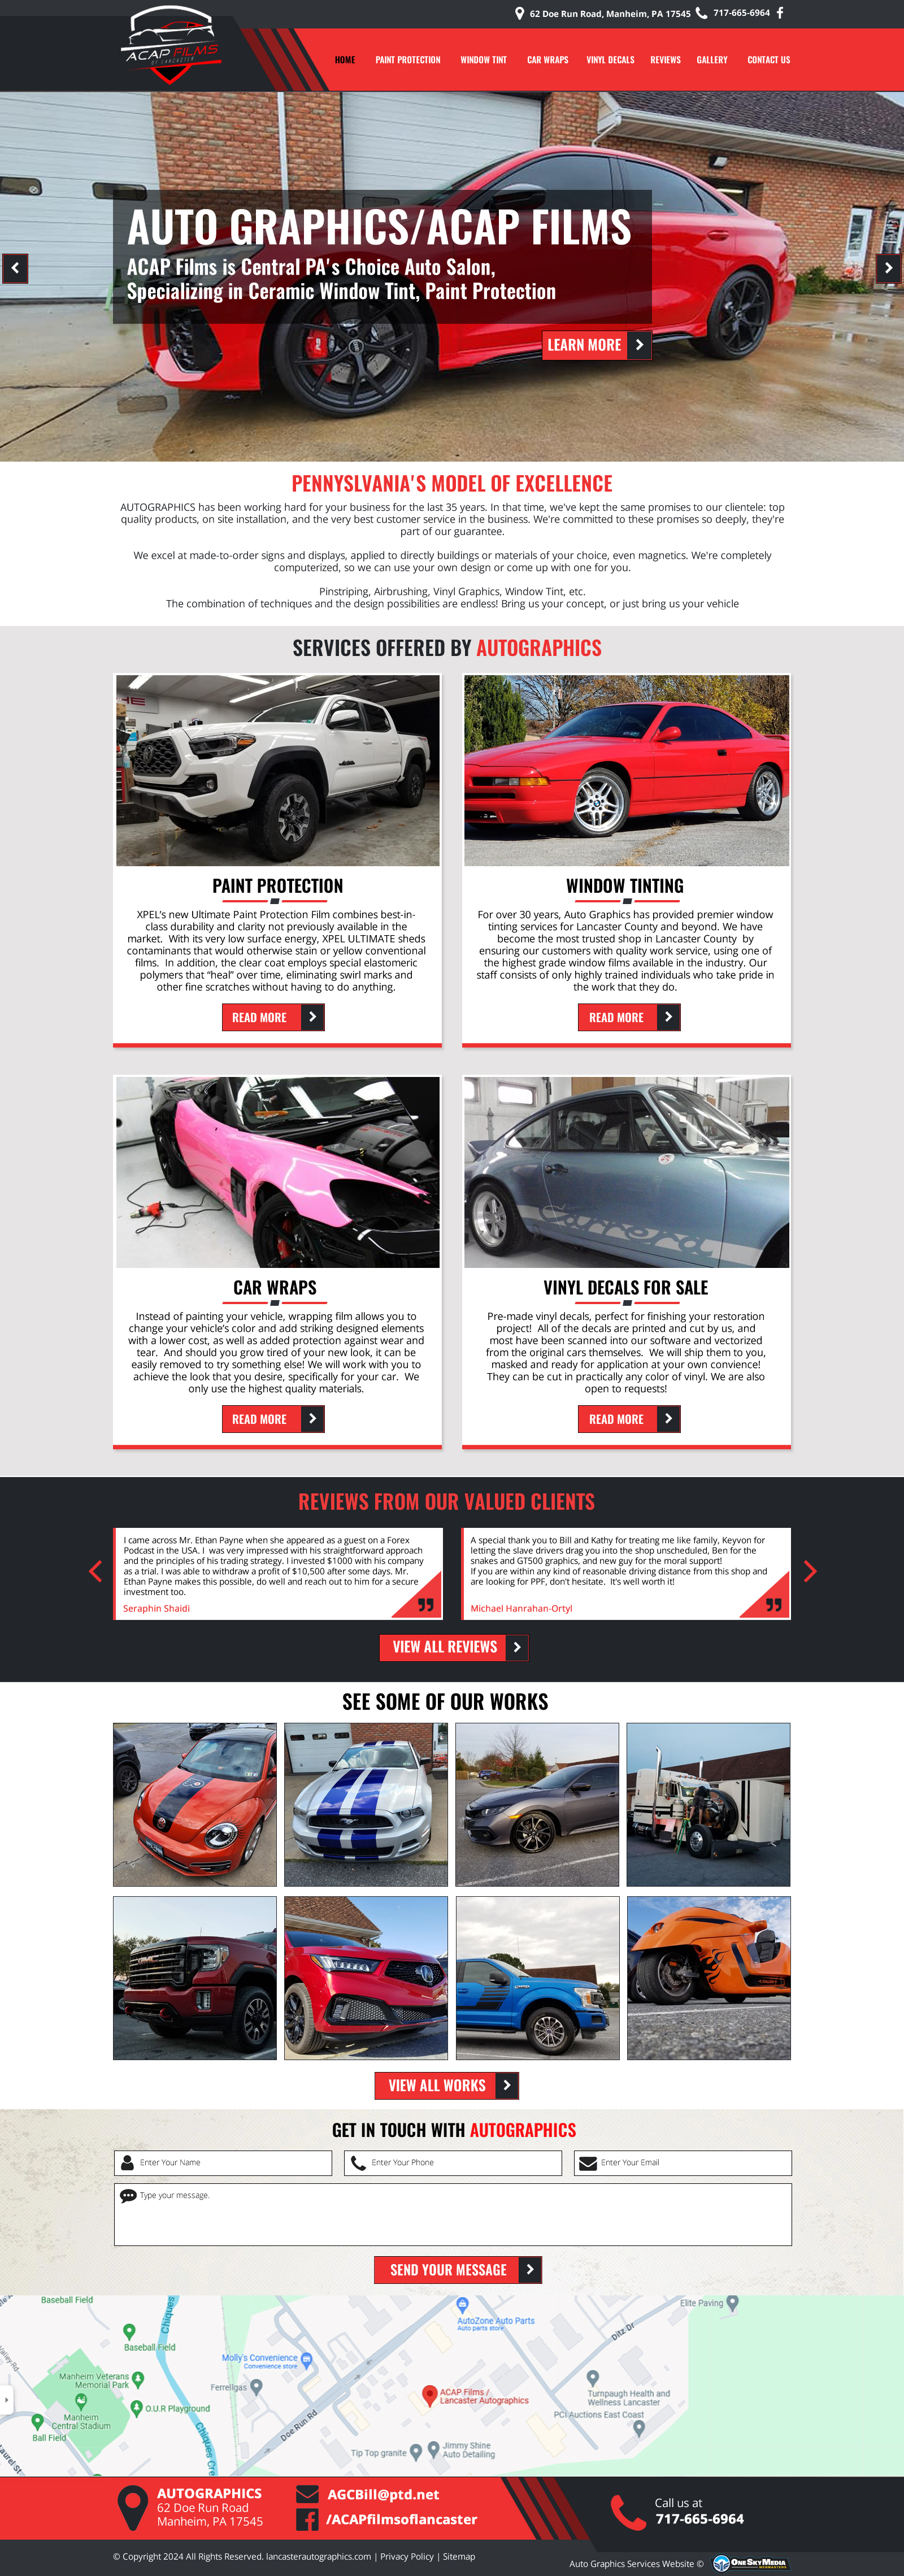 Auto Graphics / ACAP Films – Auto Salon Services Website Design